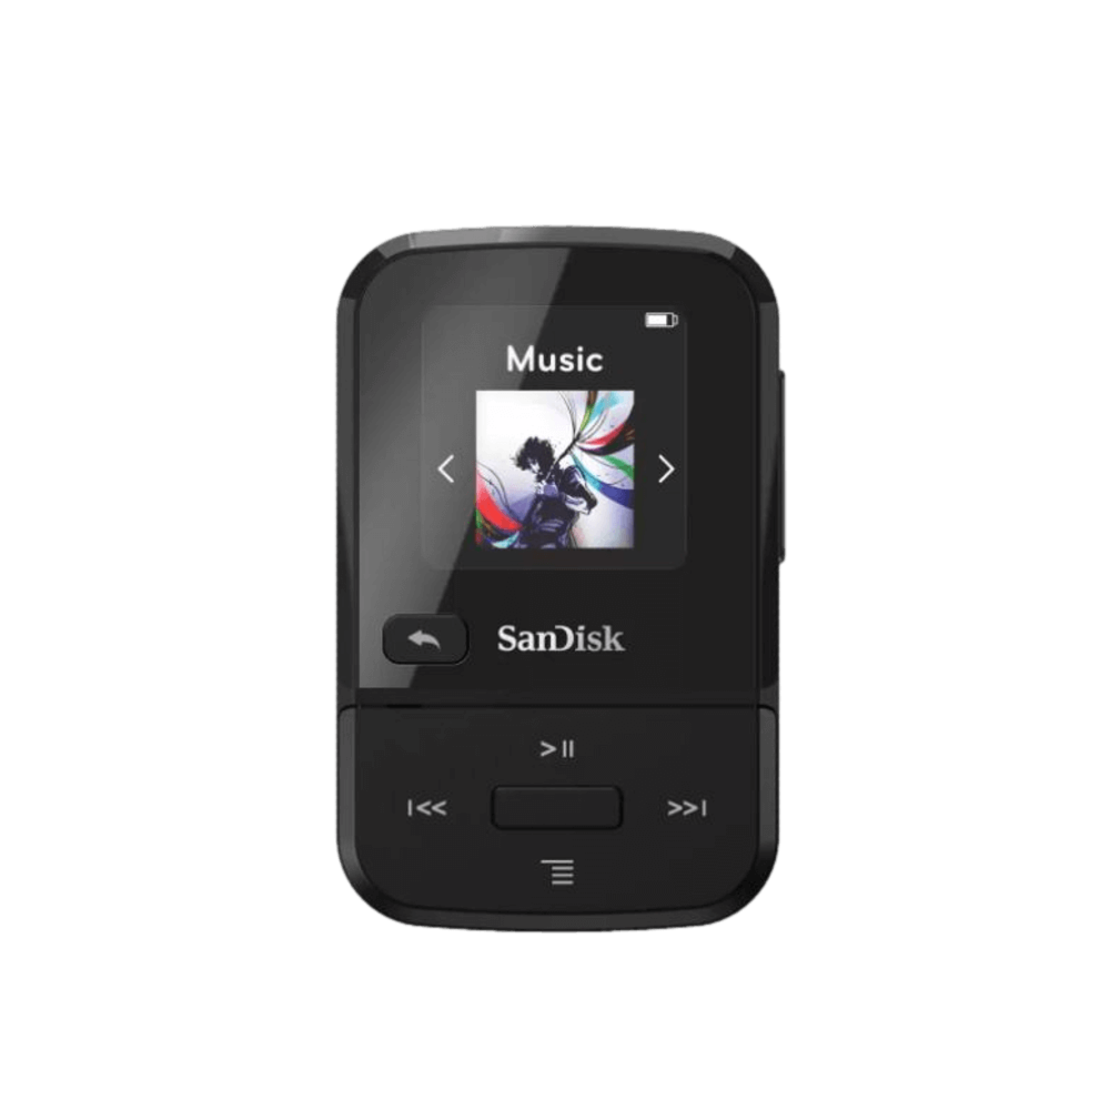 נגן MP3 קליפ ספורט גו 32 GB סאנדיסק | Clip Sport Go 32 GB SANDISK